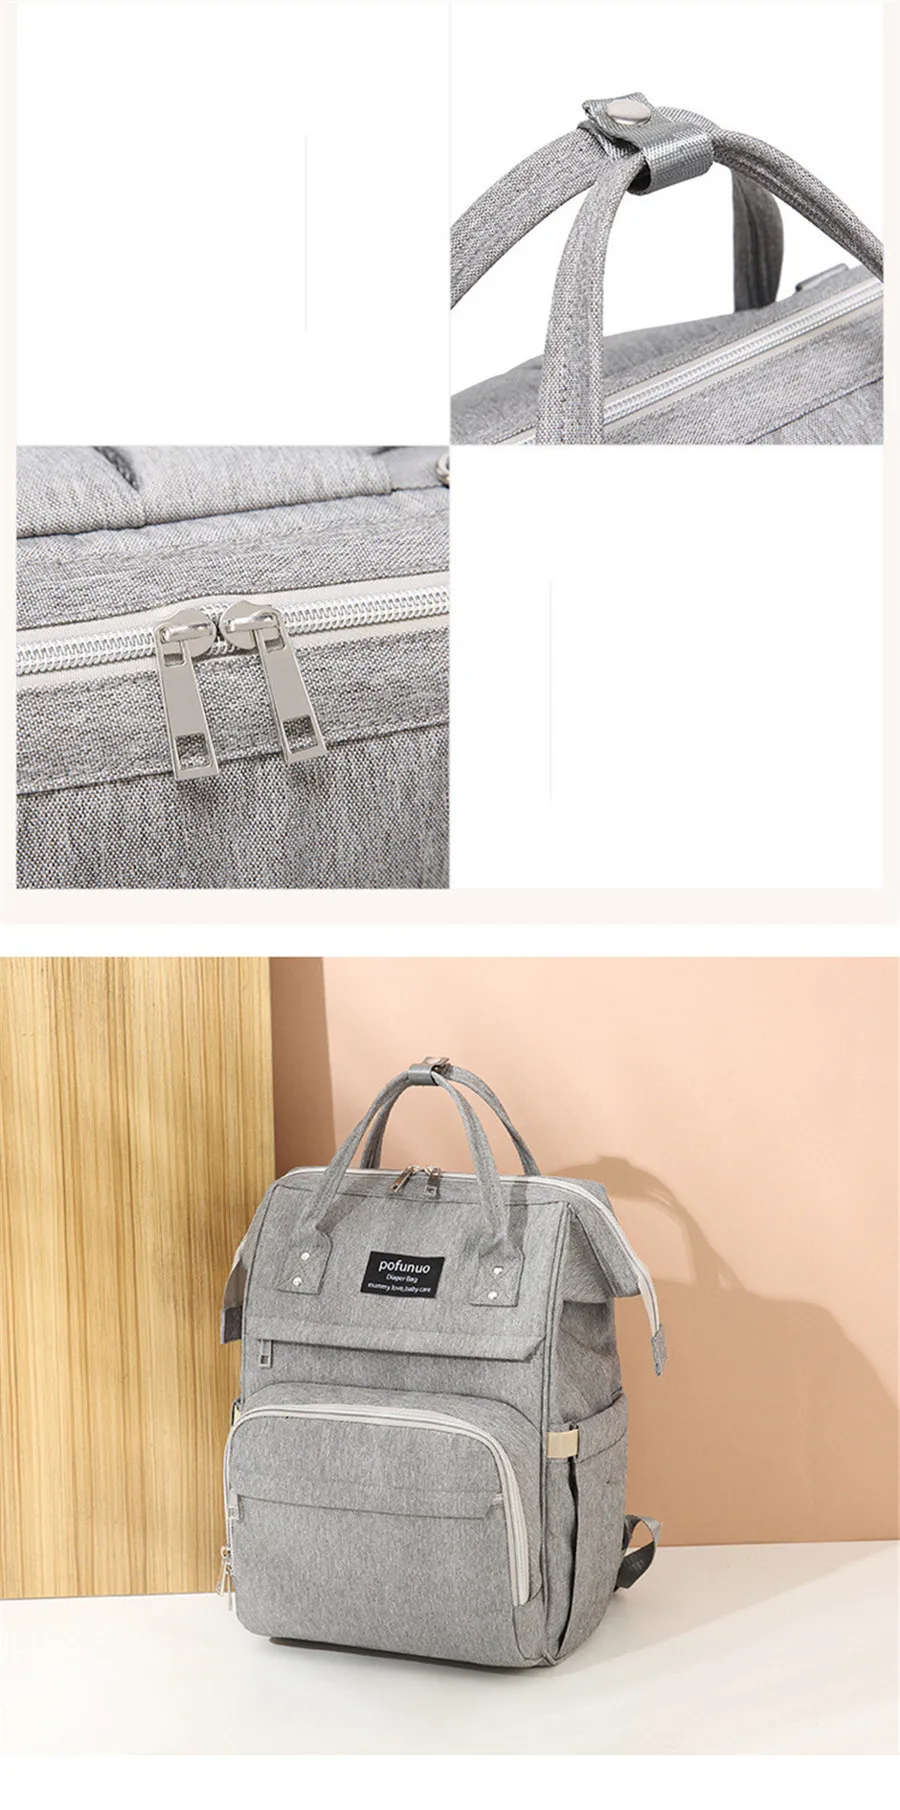 Pofunuo USB сумка для подгузников, рюкзак для путешествий, Большая вместительная сумка, водонепроницаемый Набор сумок для подгузников, Мумия, сумка для кормящих мам